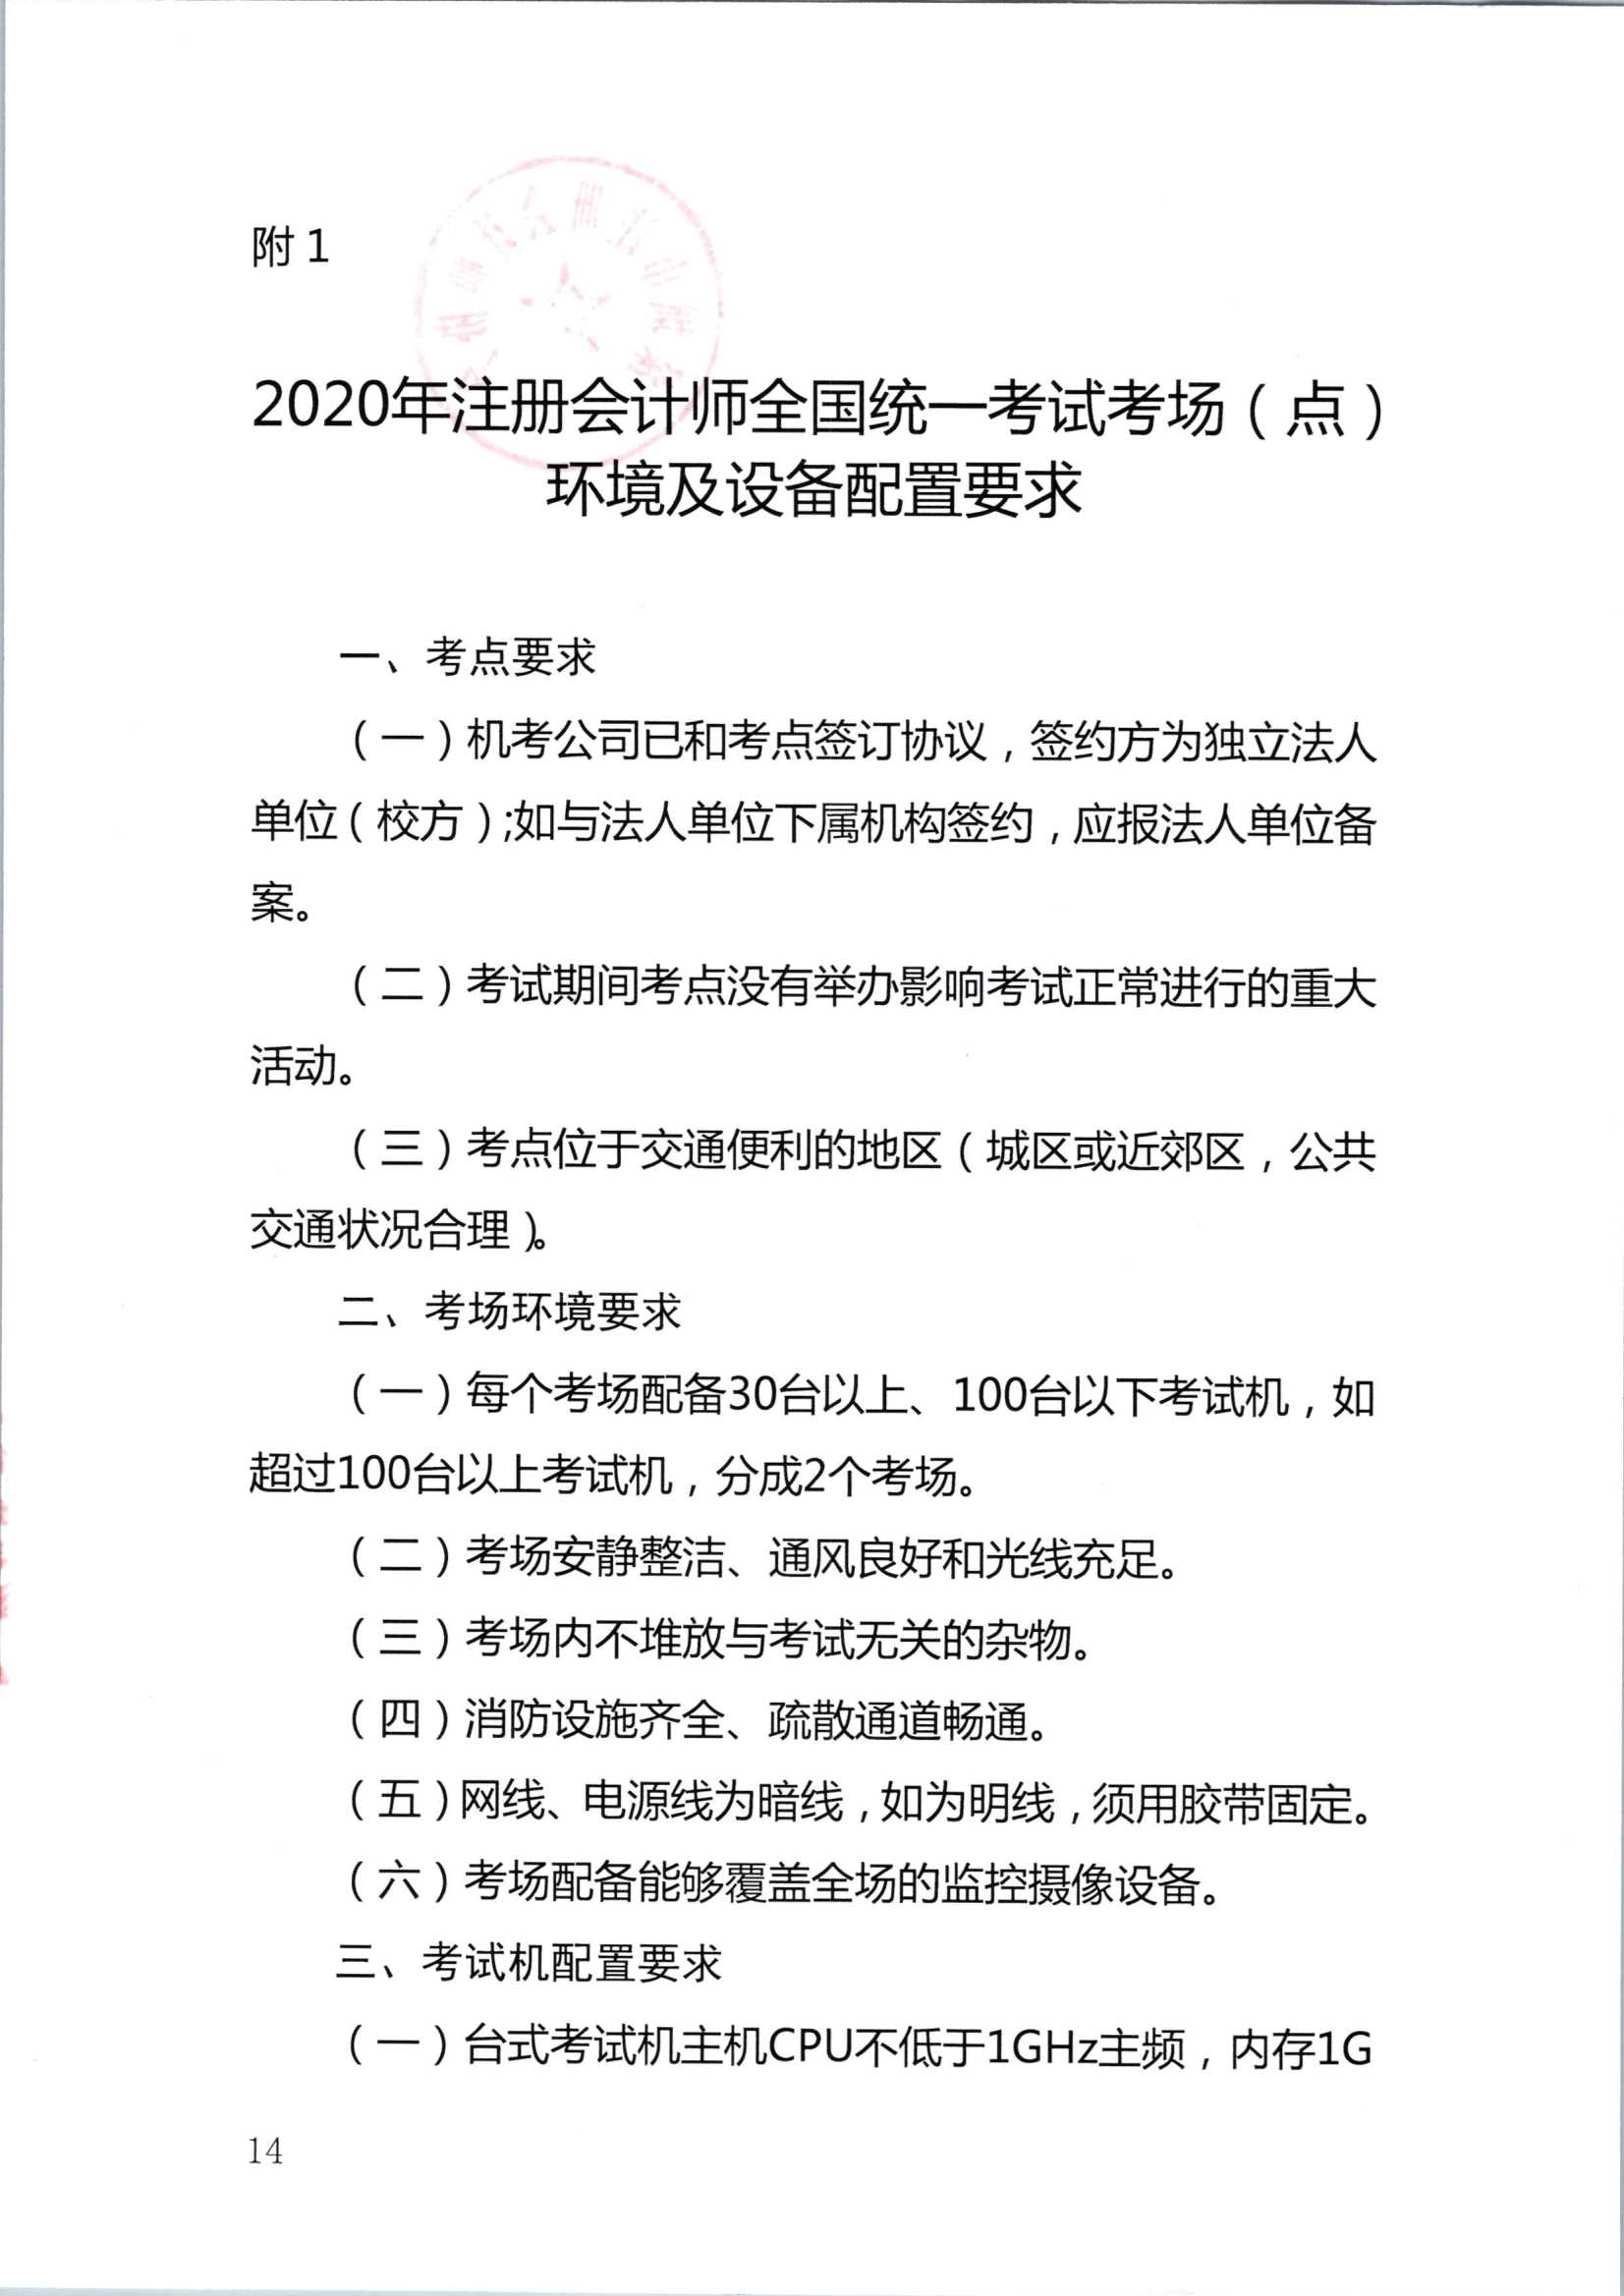 2020年注册会计师全国统一考试深圳考区工作方案_14.Png